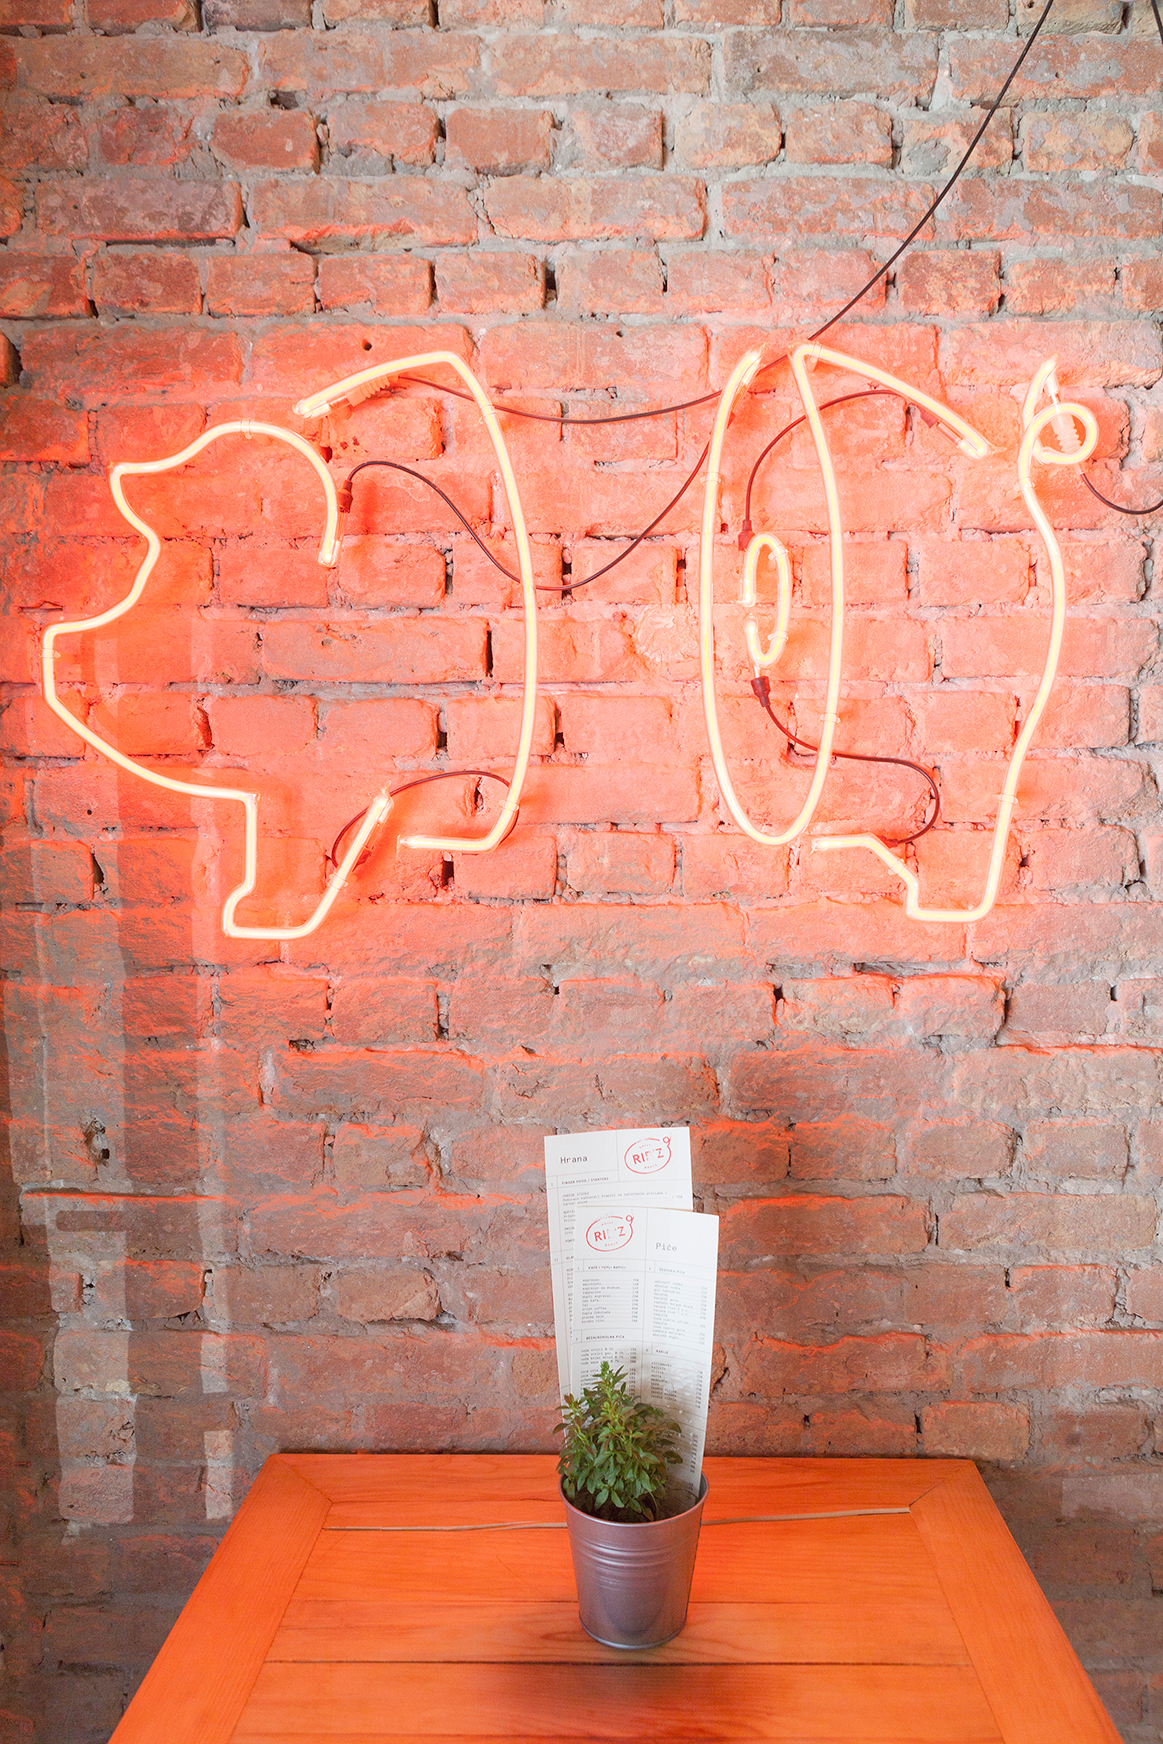 ribs restaurant bar grill BBQ visual identity Interior neon aleksandar spasojevic Milena Savic aleksandar savic belgrade pig pork inspire